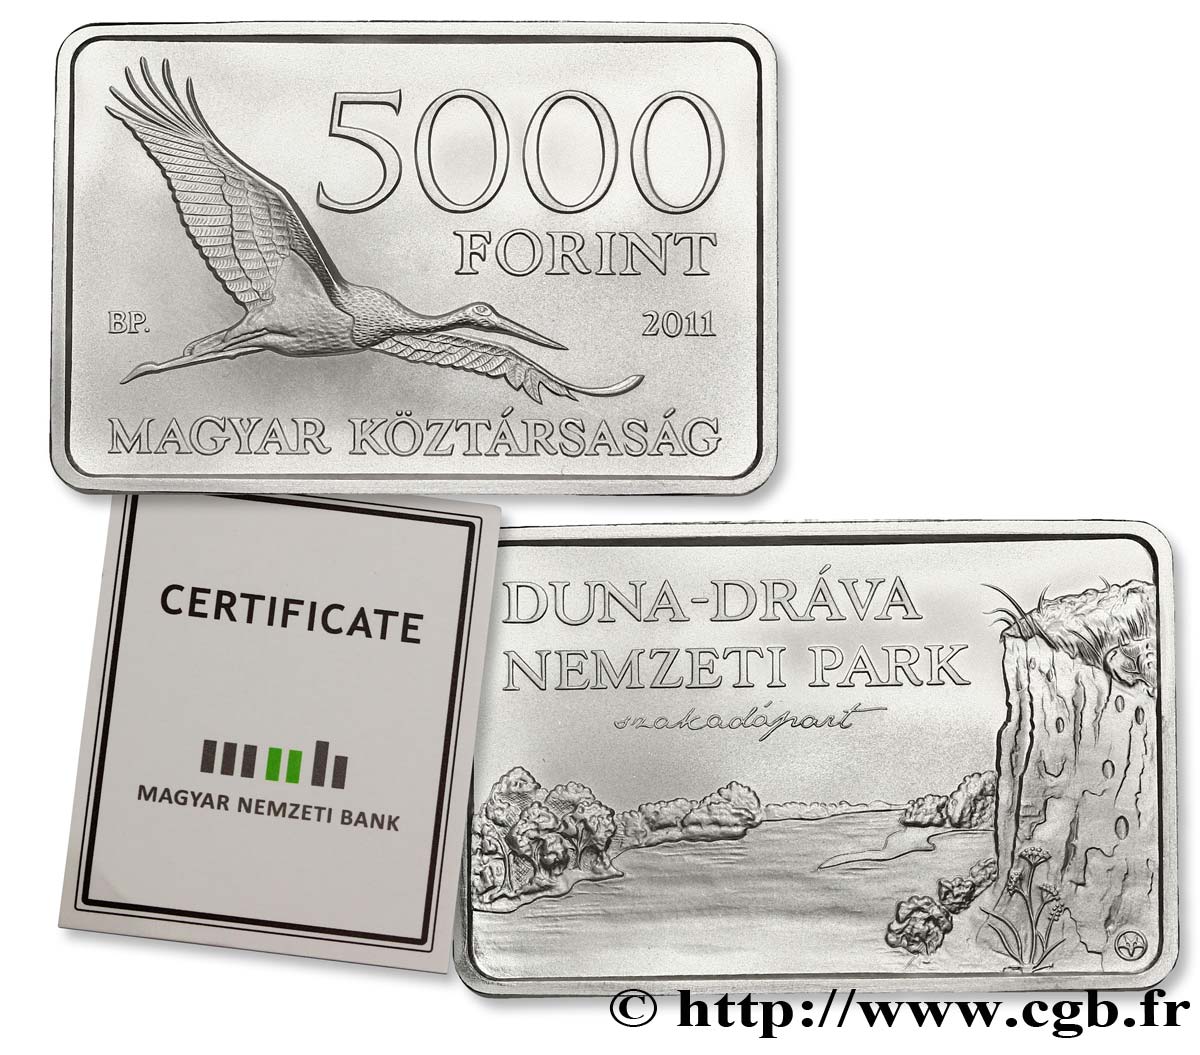 HUNGRíA 5000 Forint parc national Duna-Dráva : cigogne noire / vue des rives 2011  FDC 